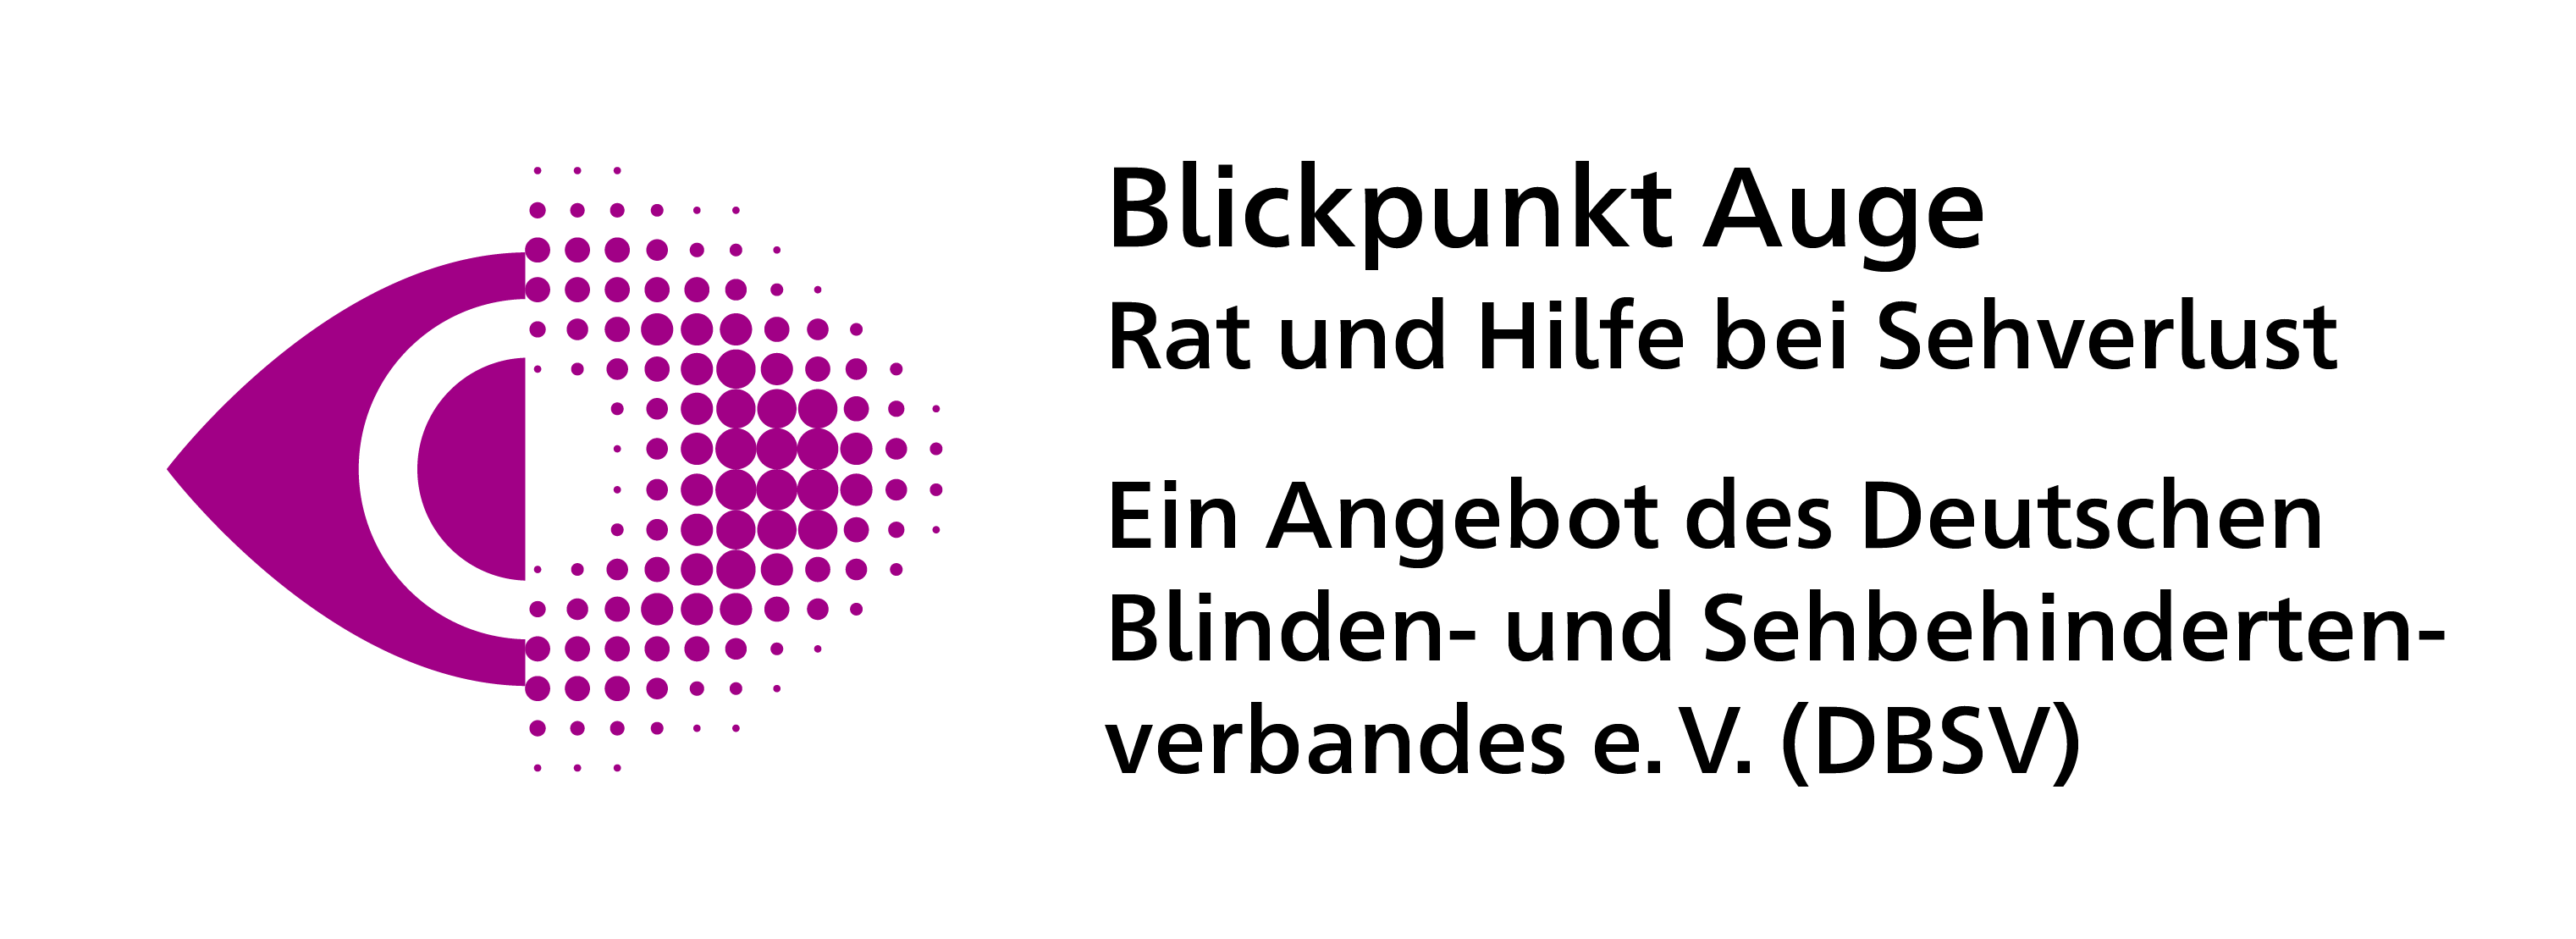 Logo Blickpunkt Auge – Rat und Hilfe bei Sehverlust, ein Angebot des Deutschen Blinden- und Sehbehindertenverbandes e.V. (DBSV)